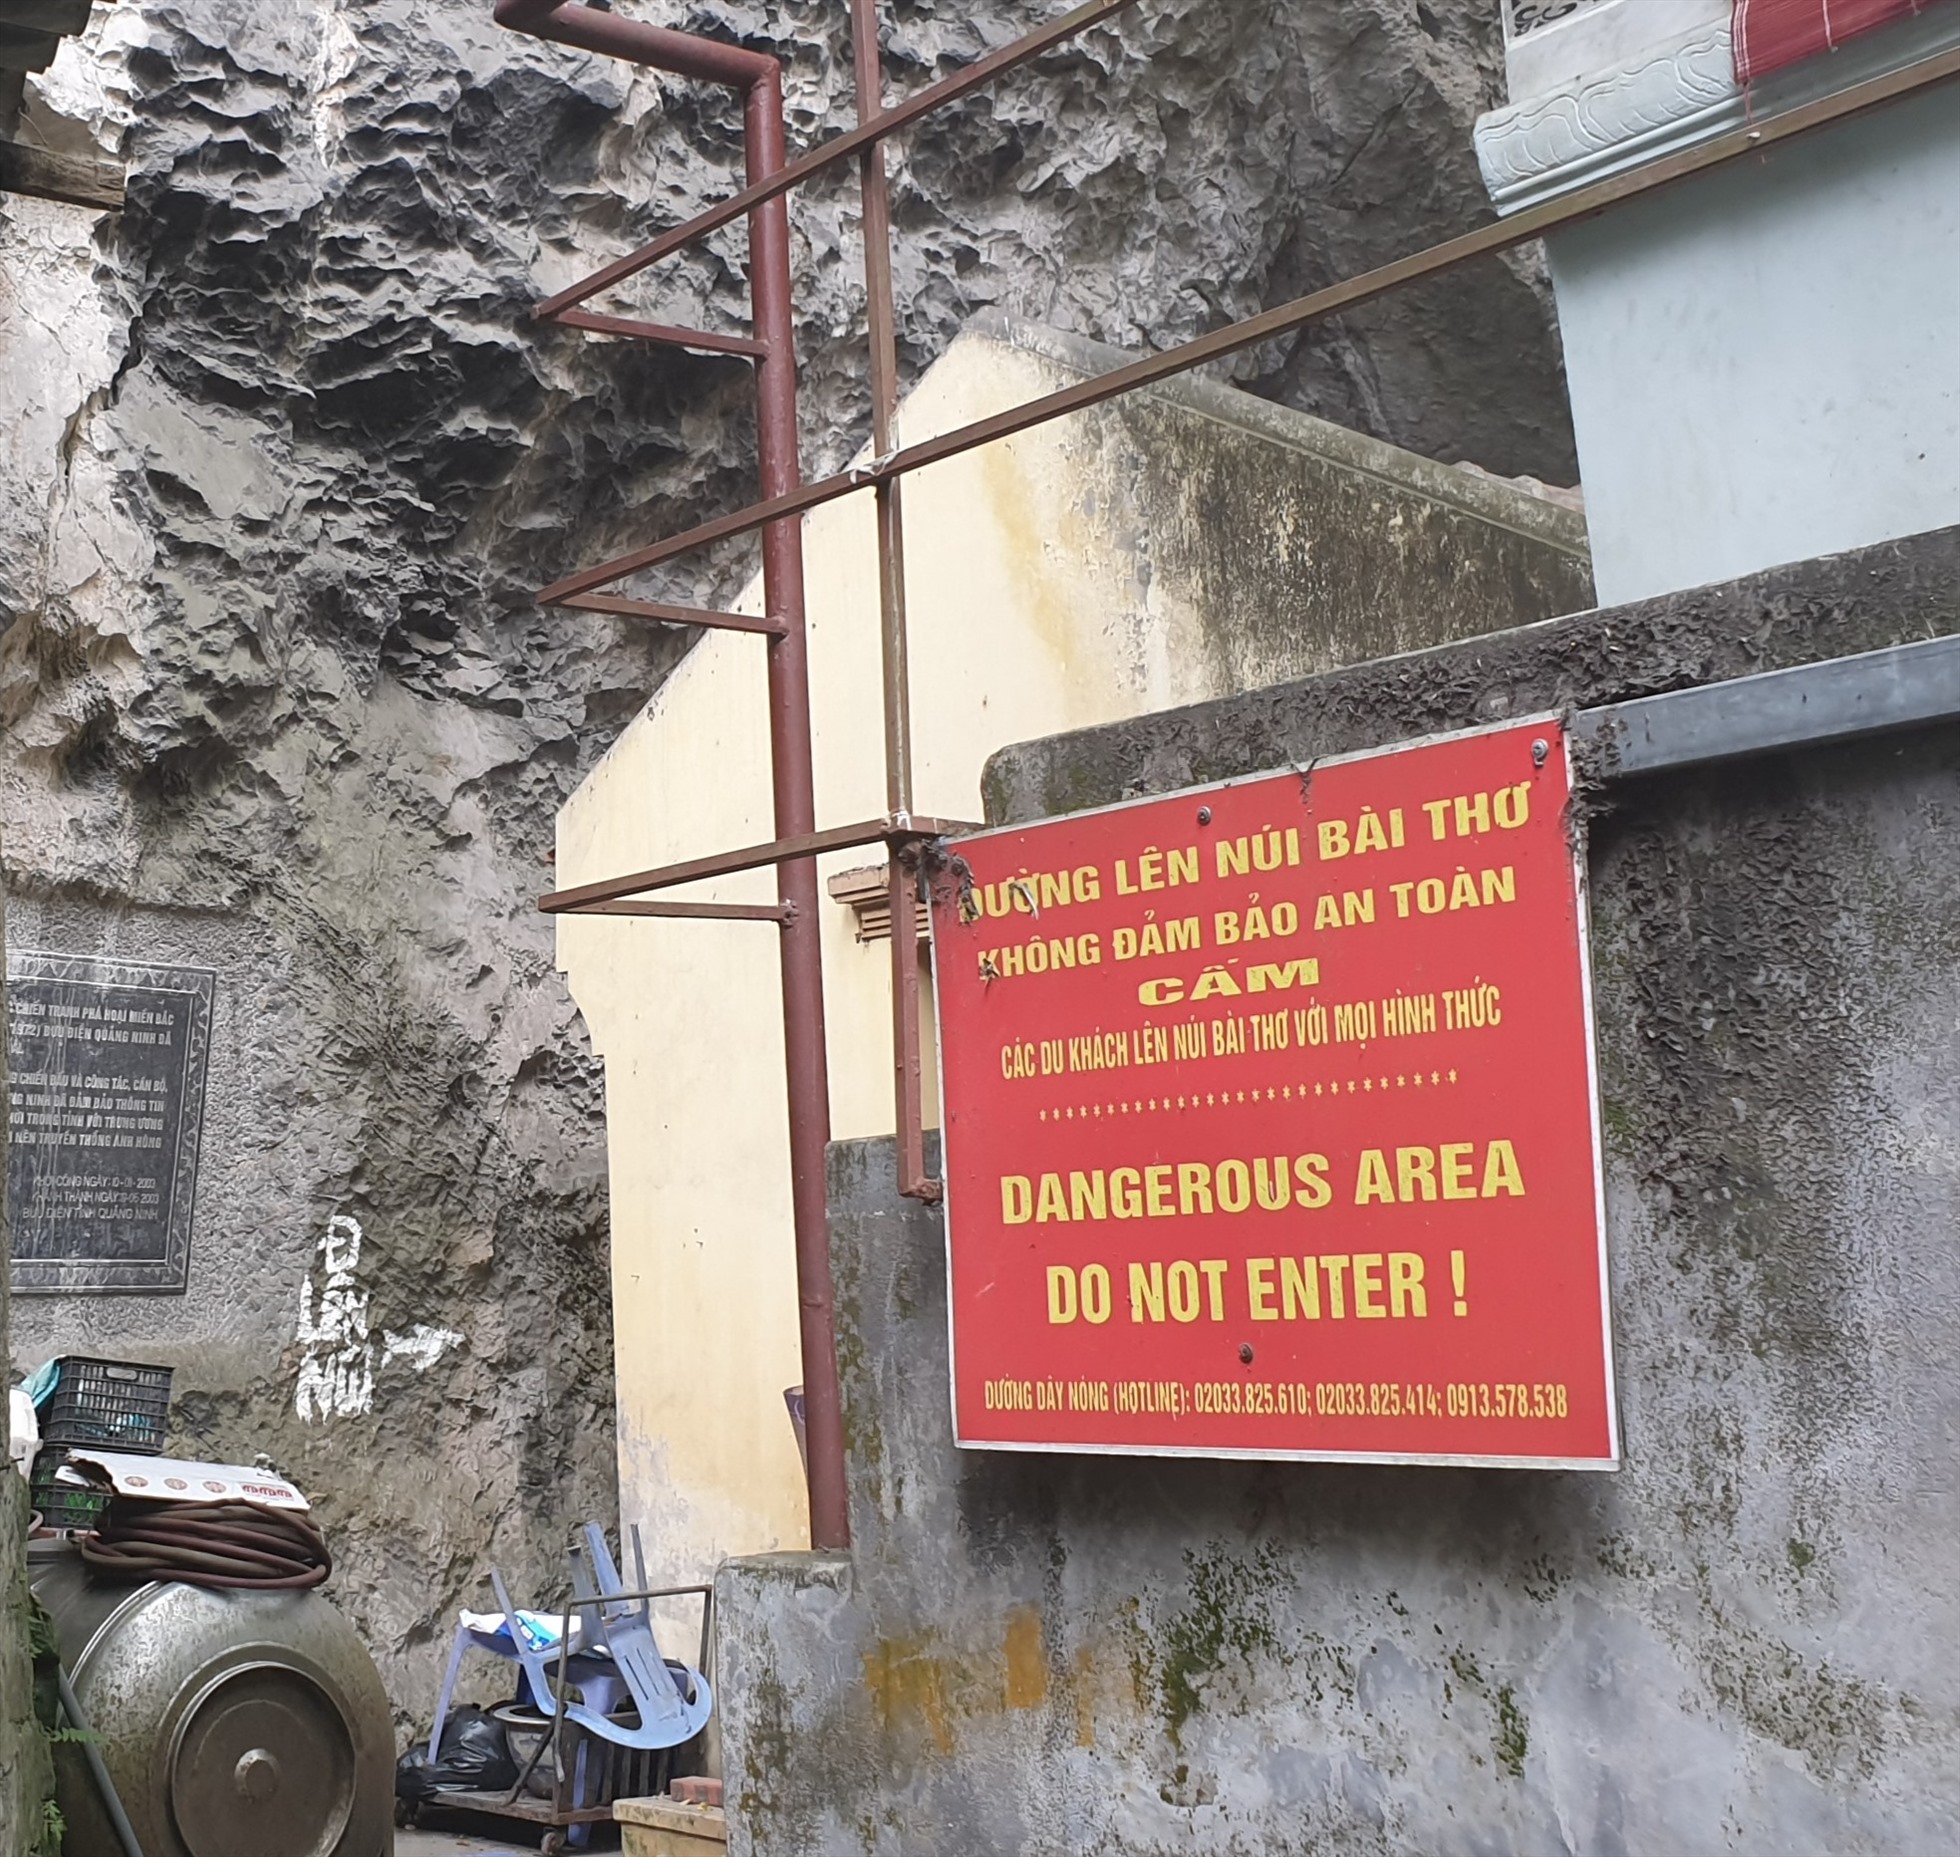 Núi Bài Thơ bị đóng cửa sau vụ cháy năm 2017. Ảnh: Nguyễn Hùng